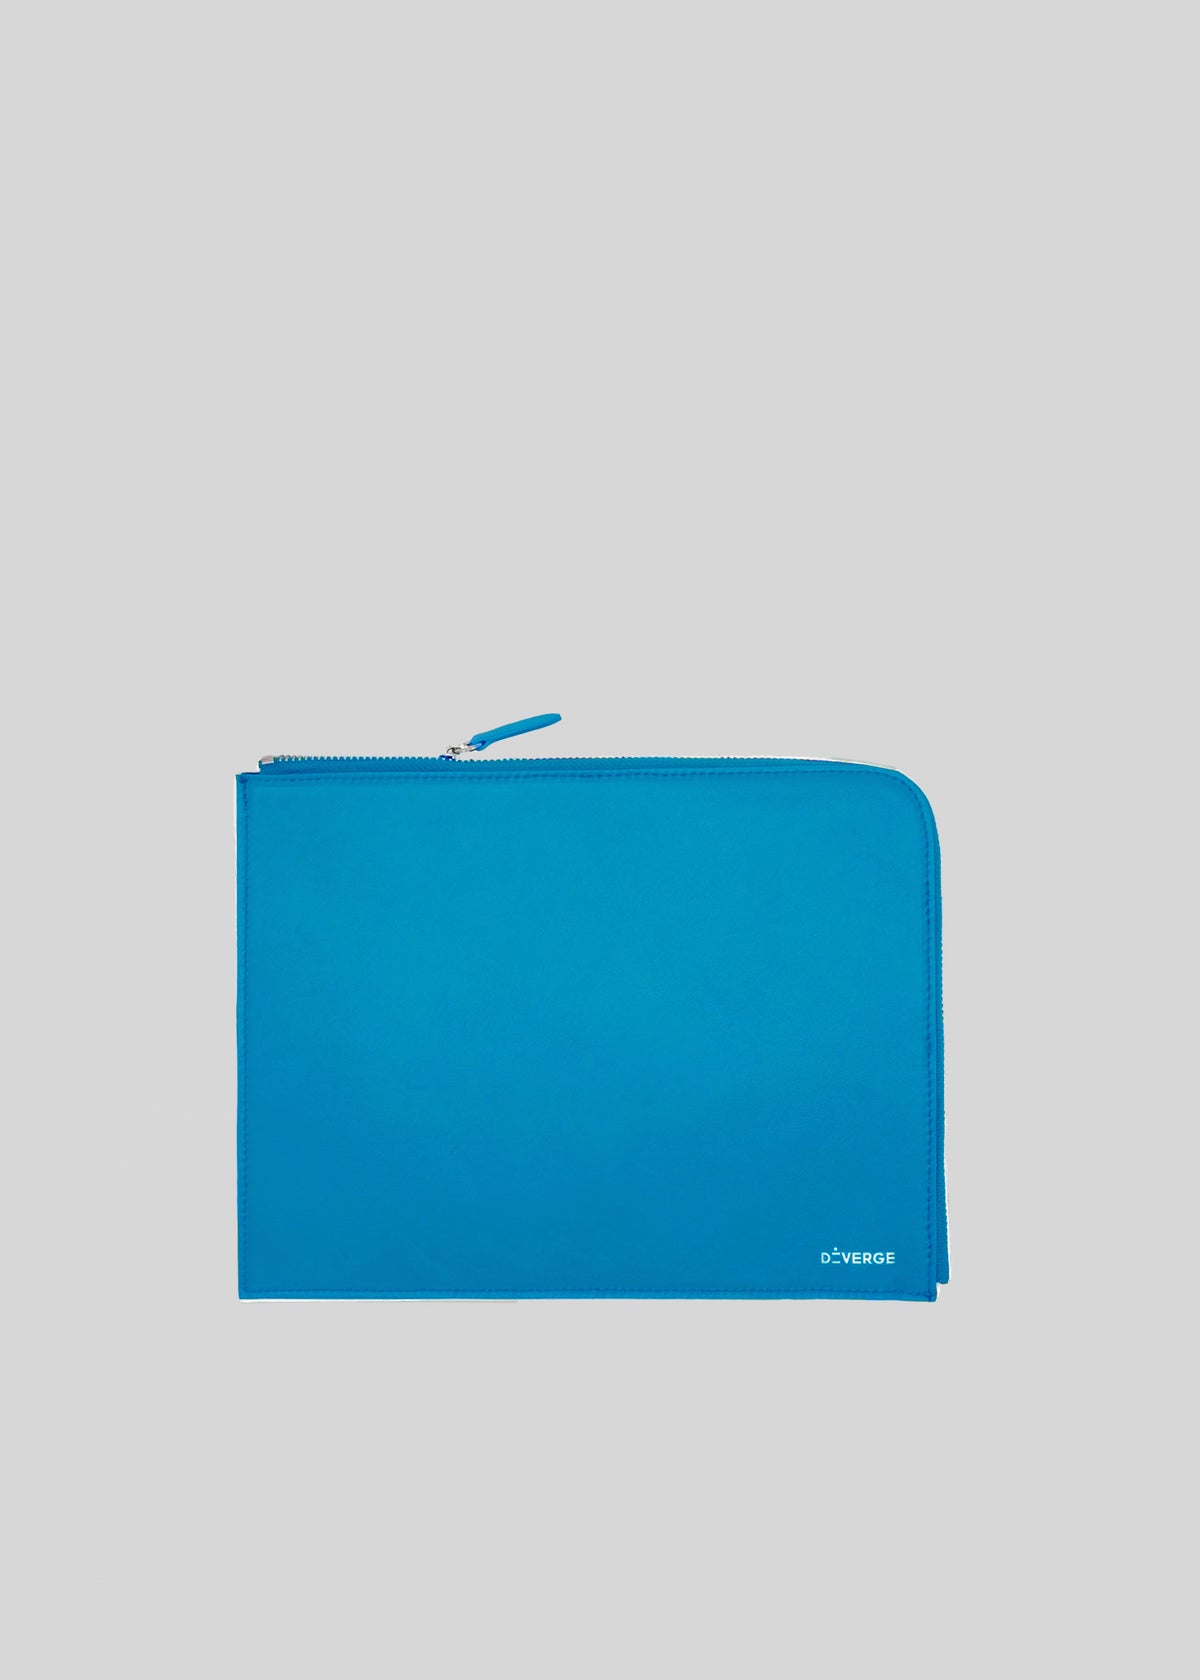 Un portafoglio con cerniera M Leather Pouch di colore blu brillante con il marchio "ateveros" stampato in minuscolo nell'angolo in basso a destra.